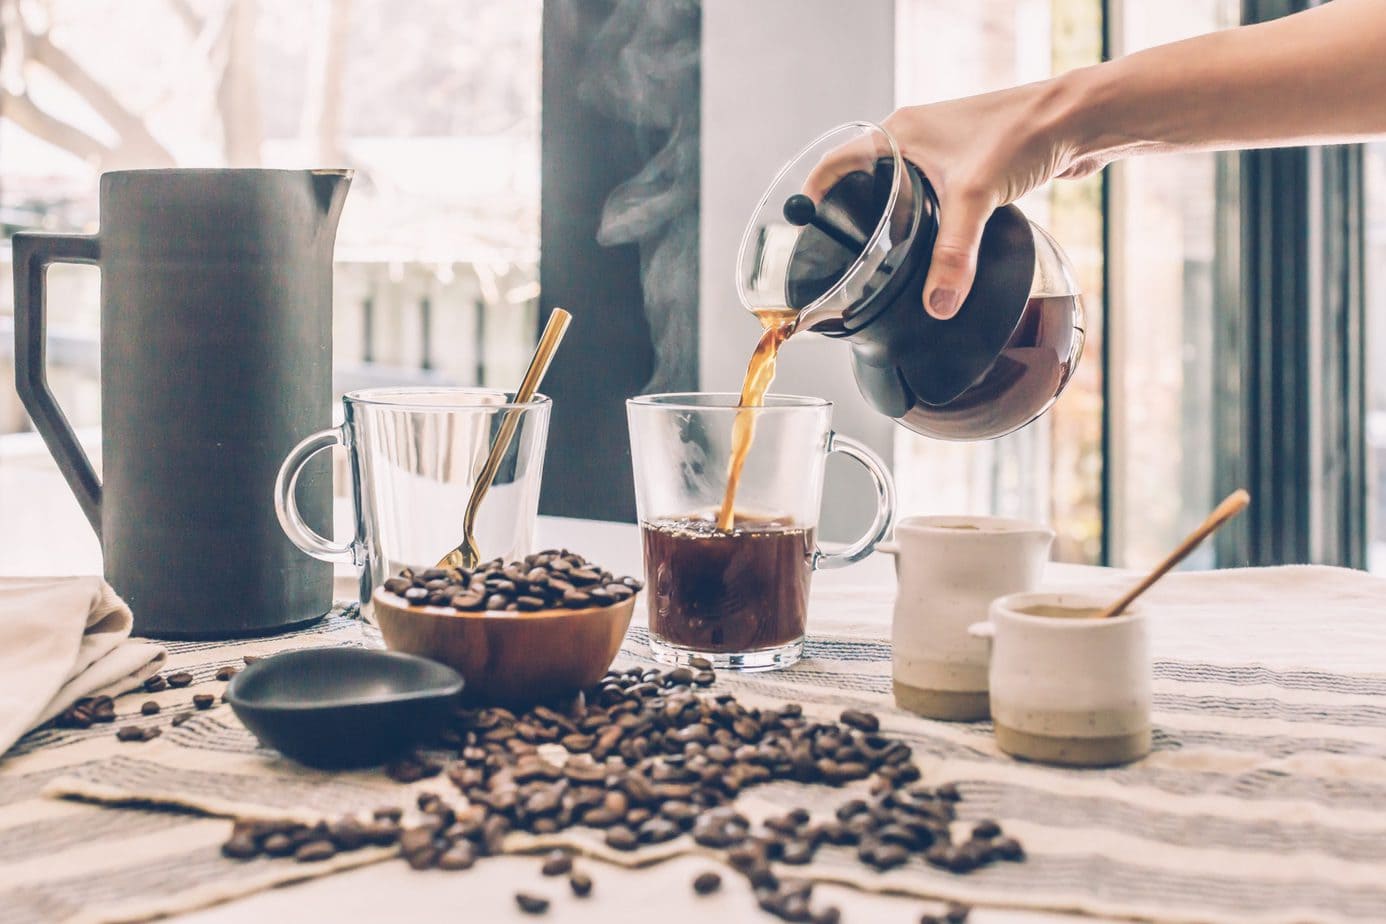 Cómo preparar café doble para obtener una taza más fuerte